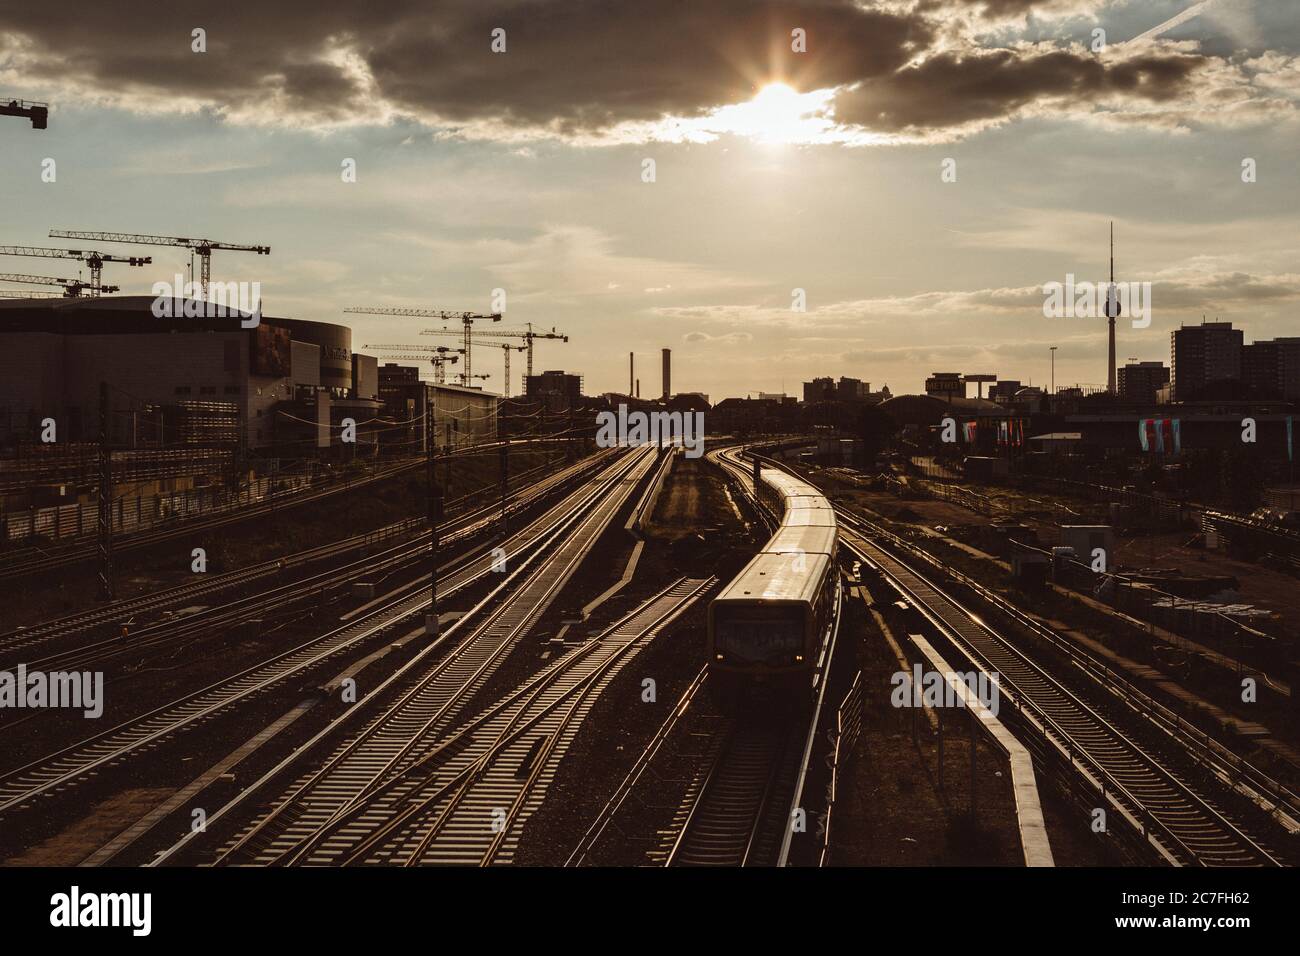 Train quittant la gare de Berlin avec le rétroéclairage du coucher de soleil doré, avec le chantier ferroviaire autour et la silhouette de la ville en arrière-plan Banque D'Images